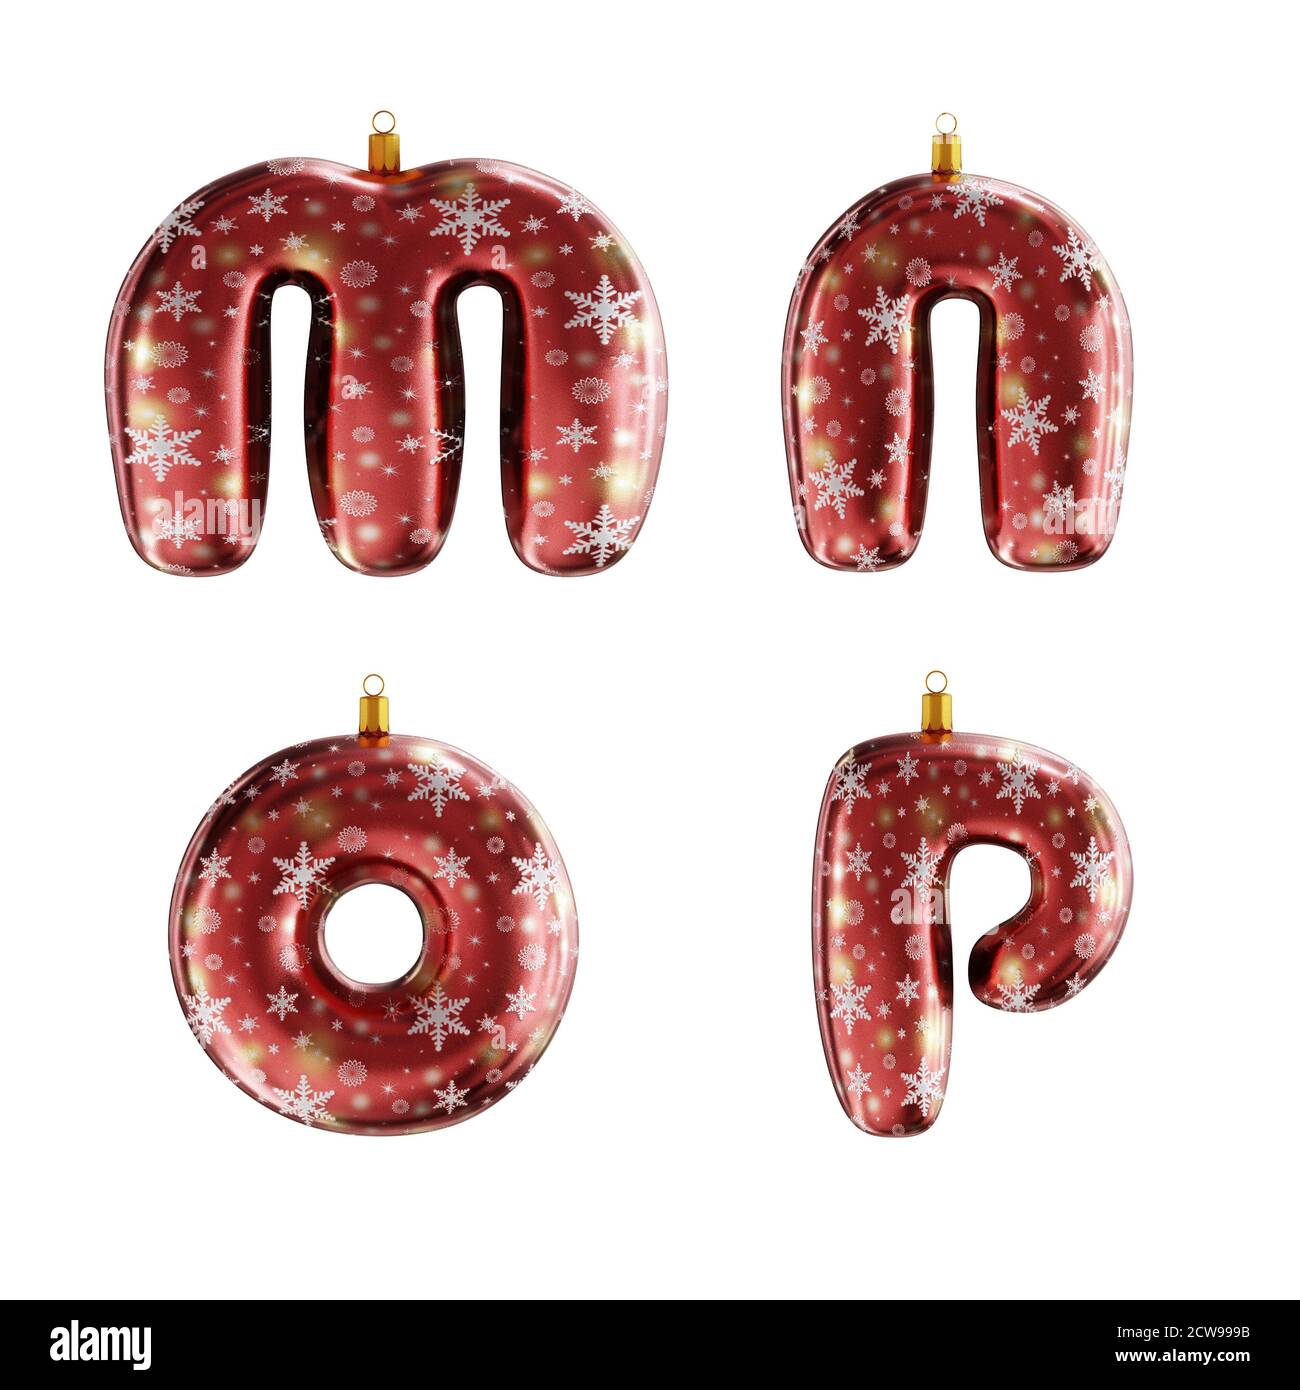 3D-Rendering von roten weihnachtsschmuck Alphabet auf weiß geschossen - Buchstaben M-P Stockfoto